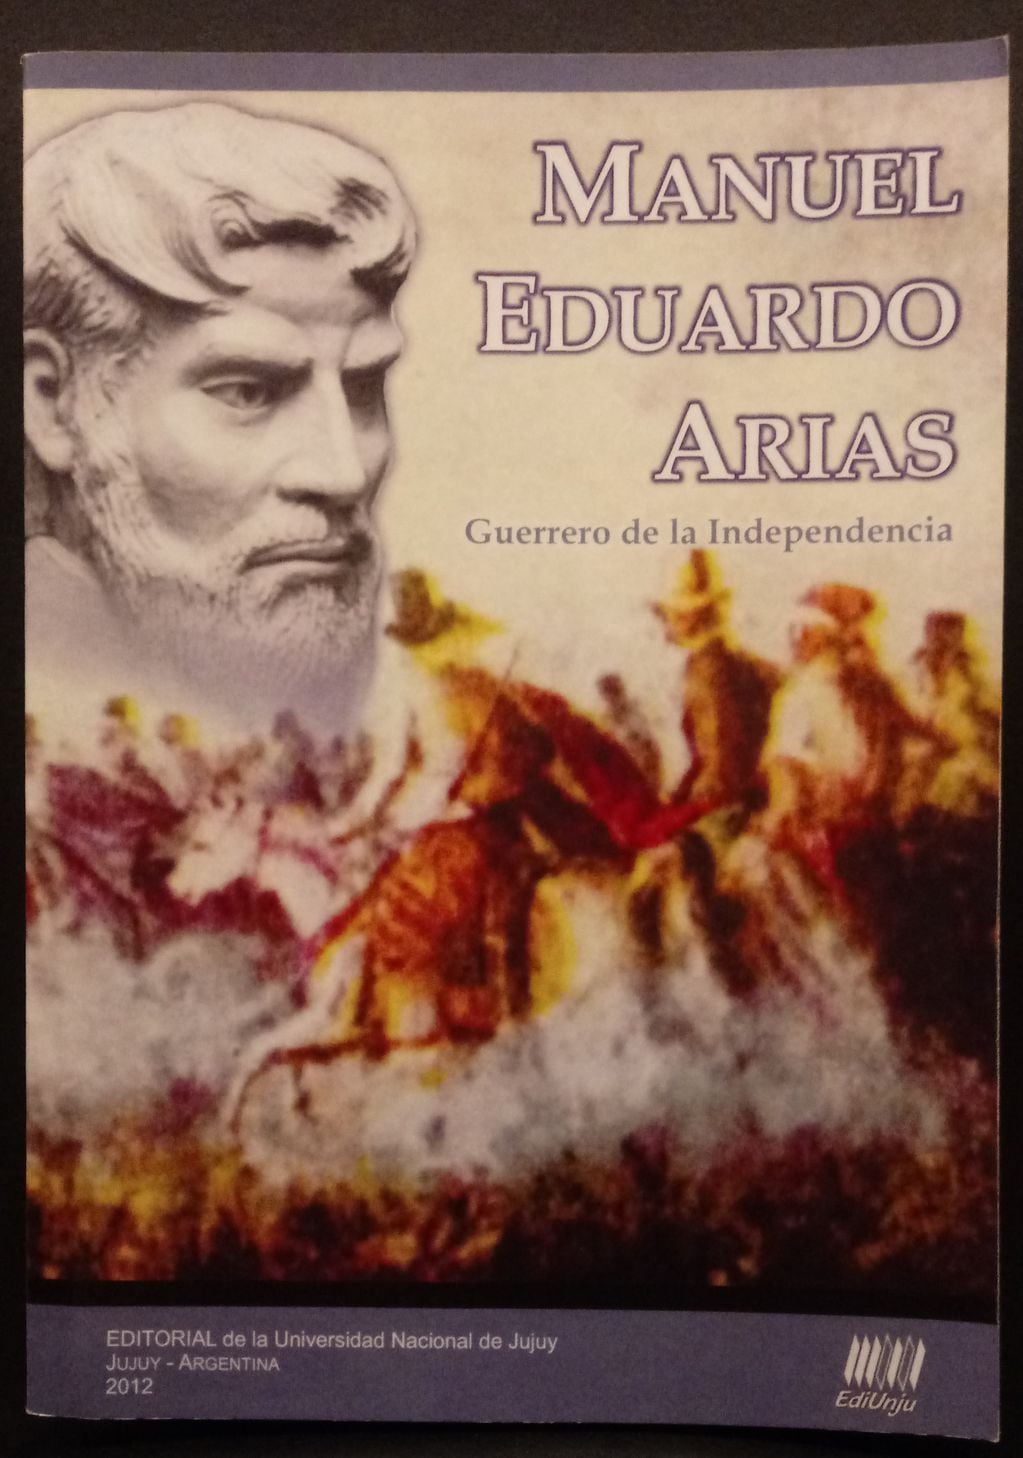 En el año 2012 la Editorial de la Universidad Nacional de Jujuy (UNJu) publicó la obra "Manuel Eduardo Arias, guerrero de la Independencia", compilación de Fernando Valdez y Alicia Fernández Distel.